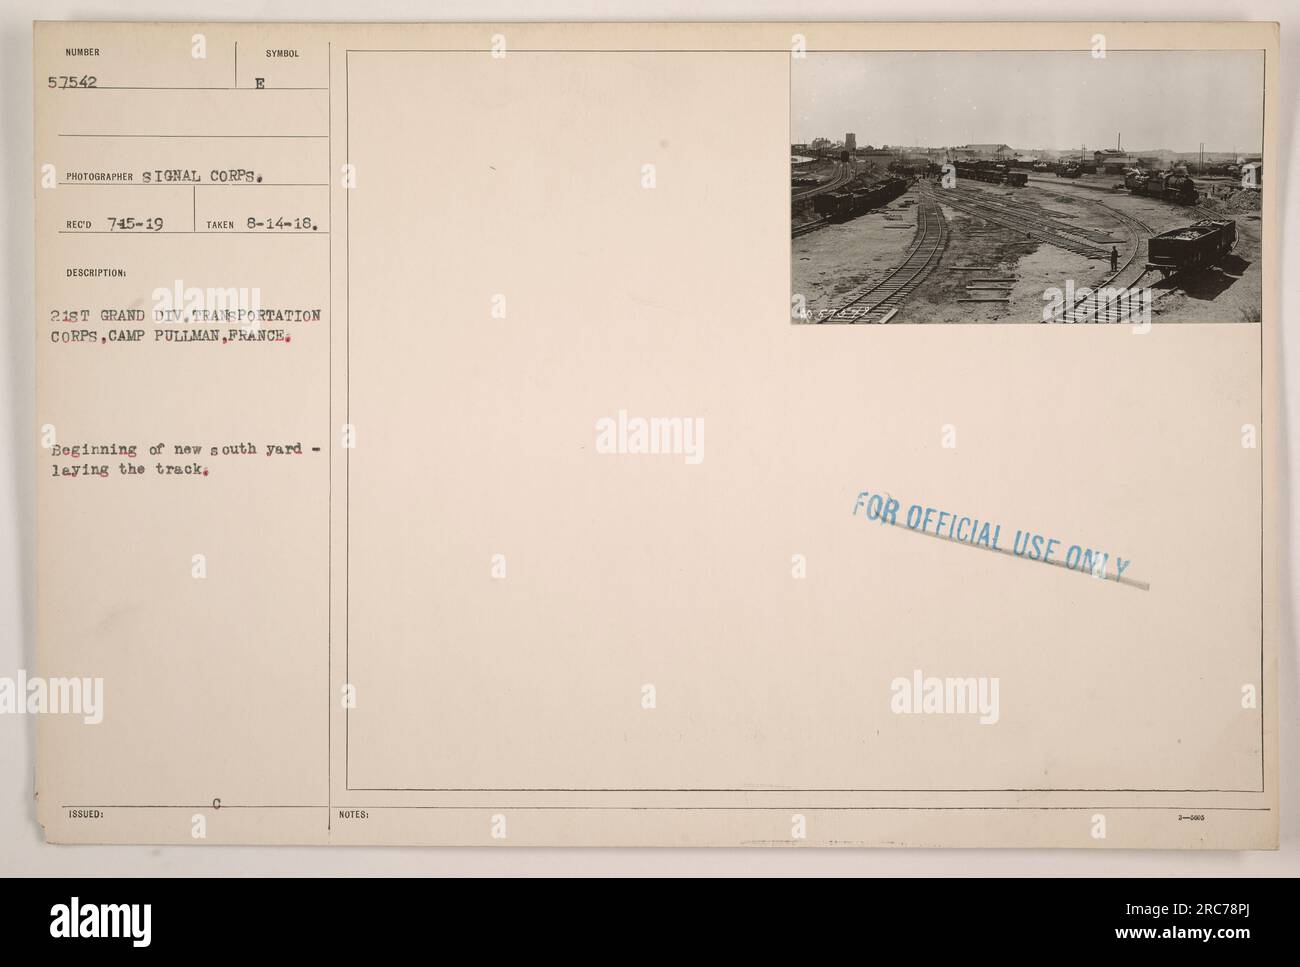 Foto der 21. Grand Div Transportkorps in Camp Pullman, Frankreich im Ersten Weltkrieg. Das Bild zeigt den Beginn des Baus des neuen Südhofs, wo die Gleise verlegt wurden. Dieses Foto wurde am 14. August 1918 von einem Fotografen des Signalkorps aufgenommen. Stockfoto